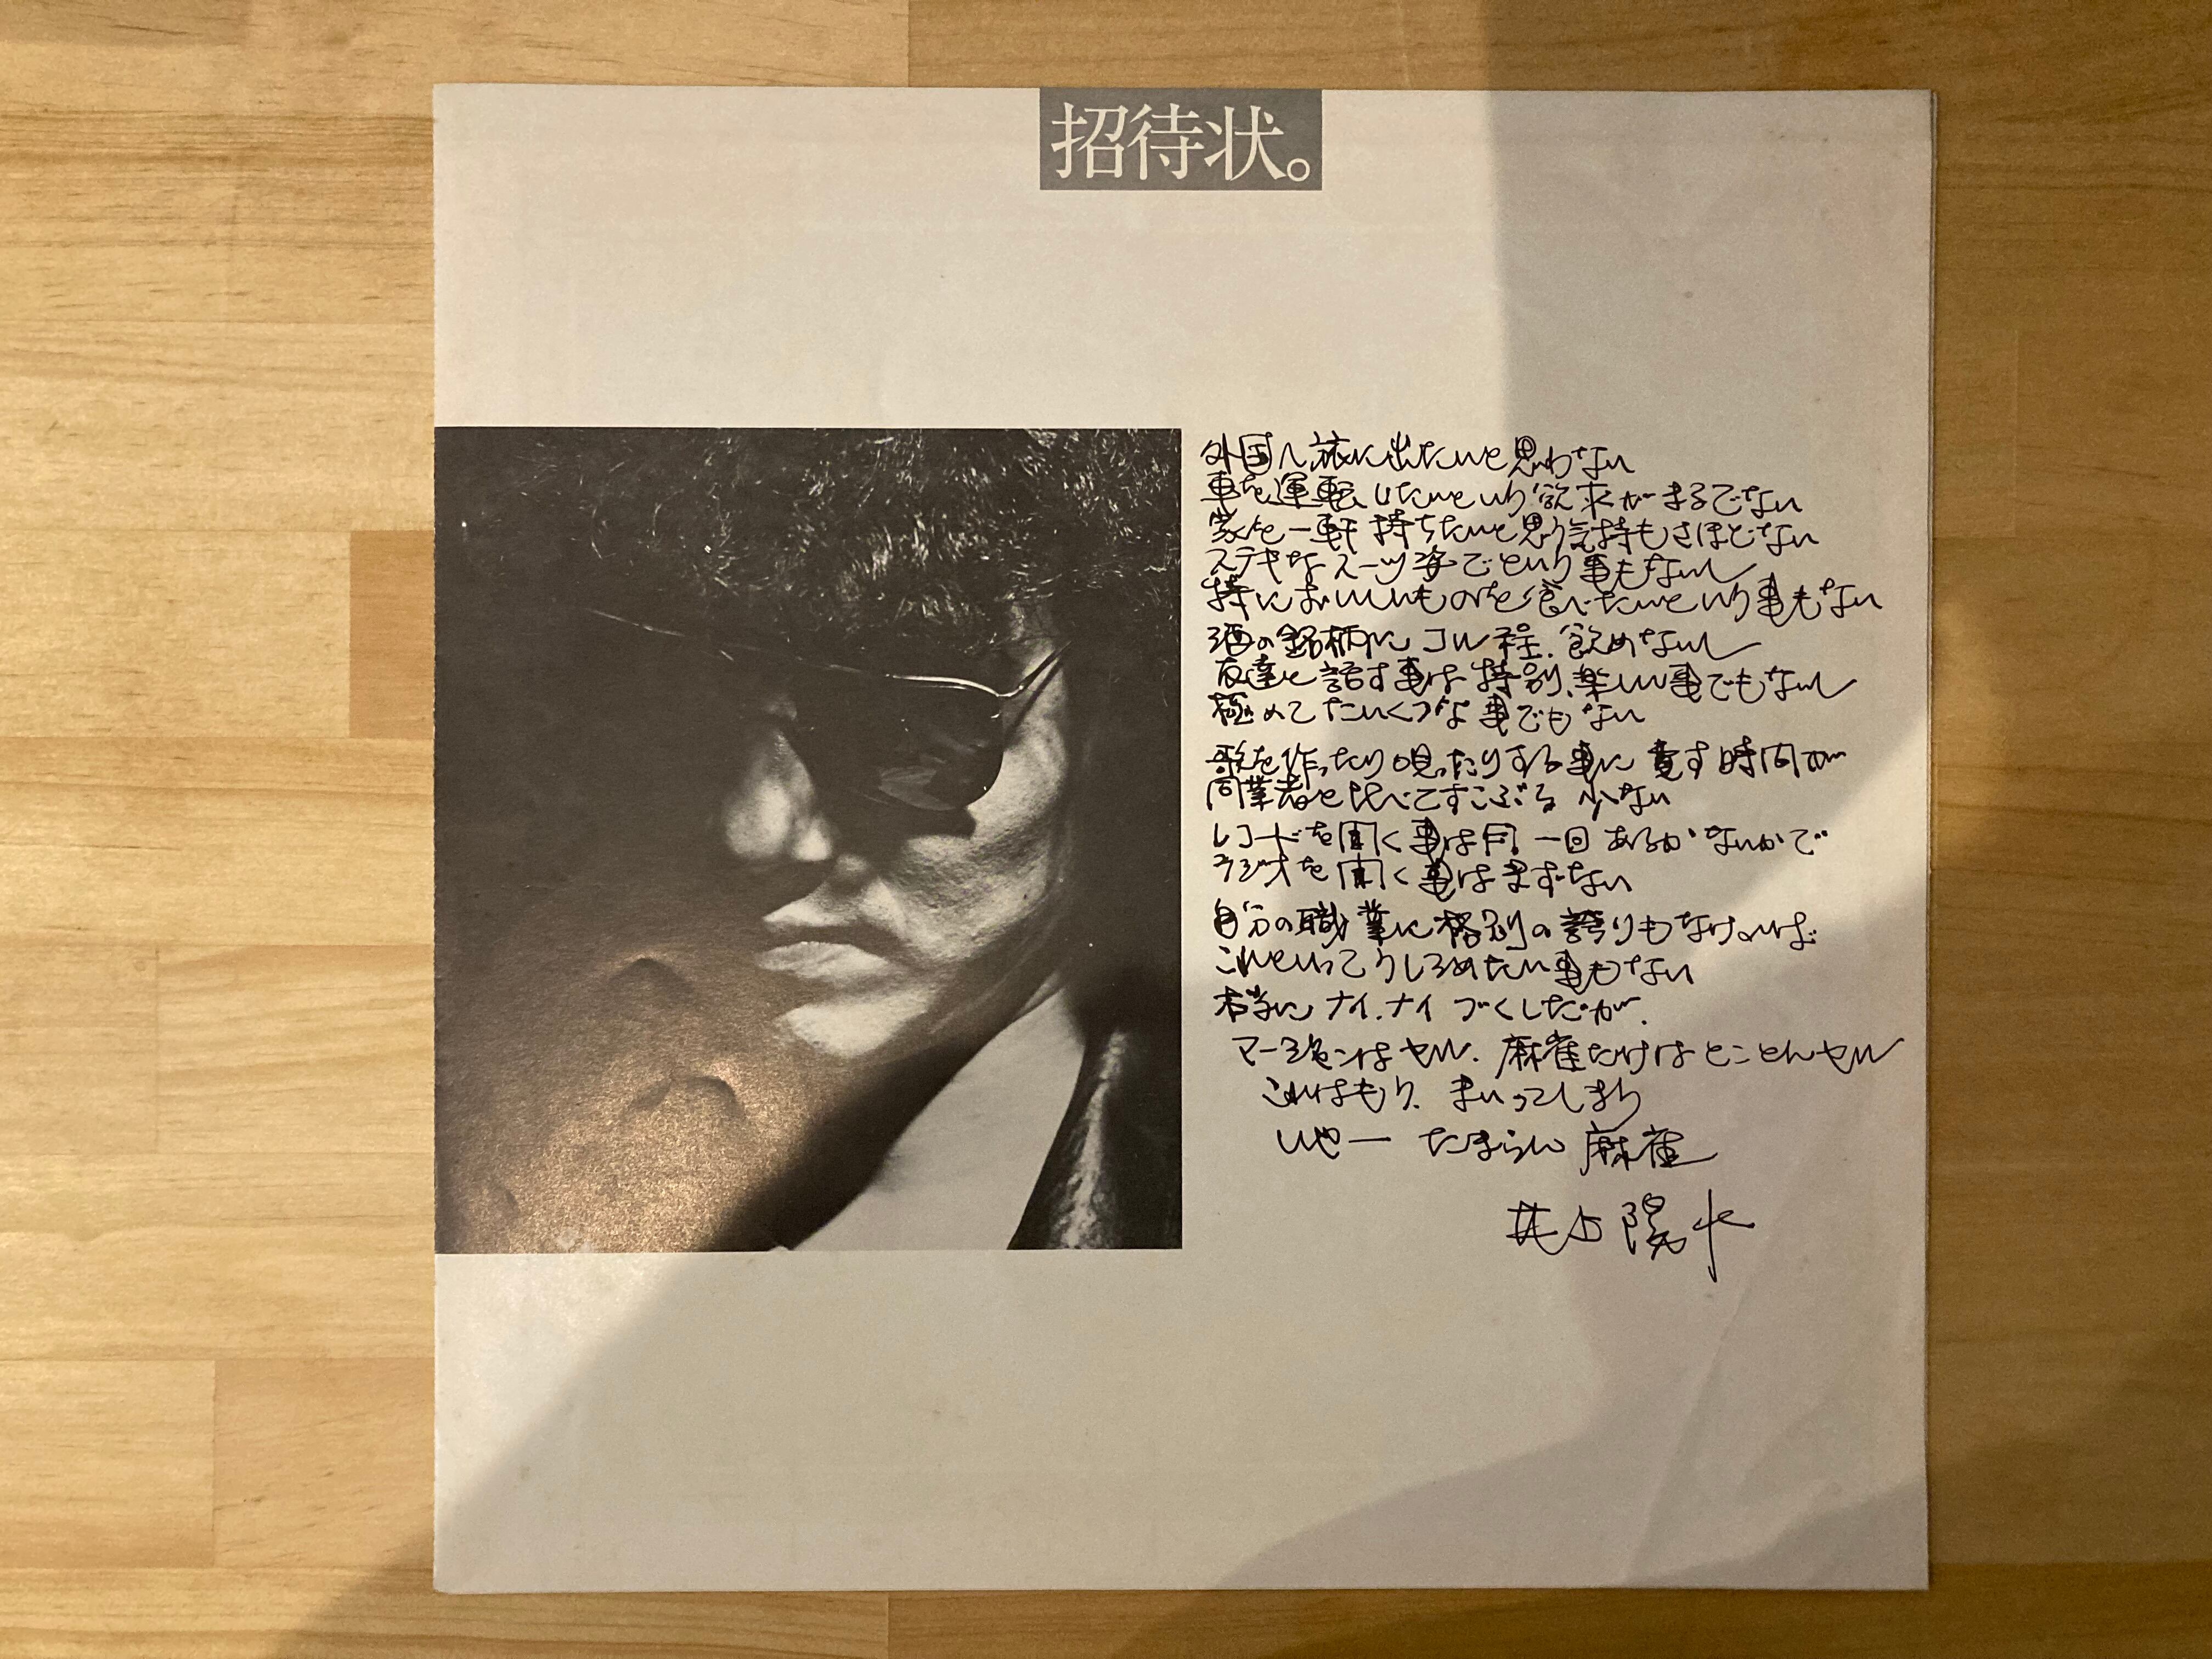 井上陽水 / 招待状のないショー | sixteen records (シックスティーン